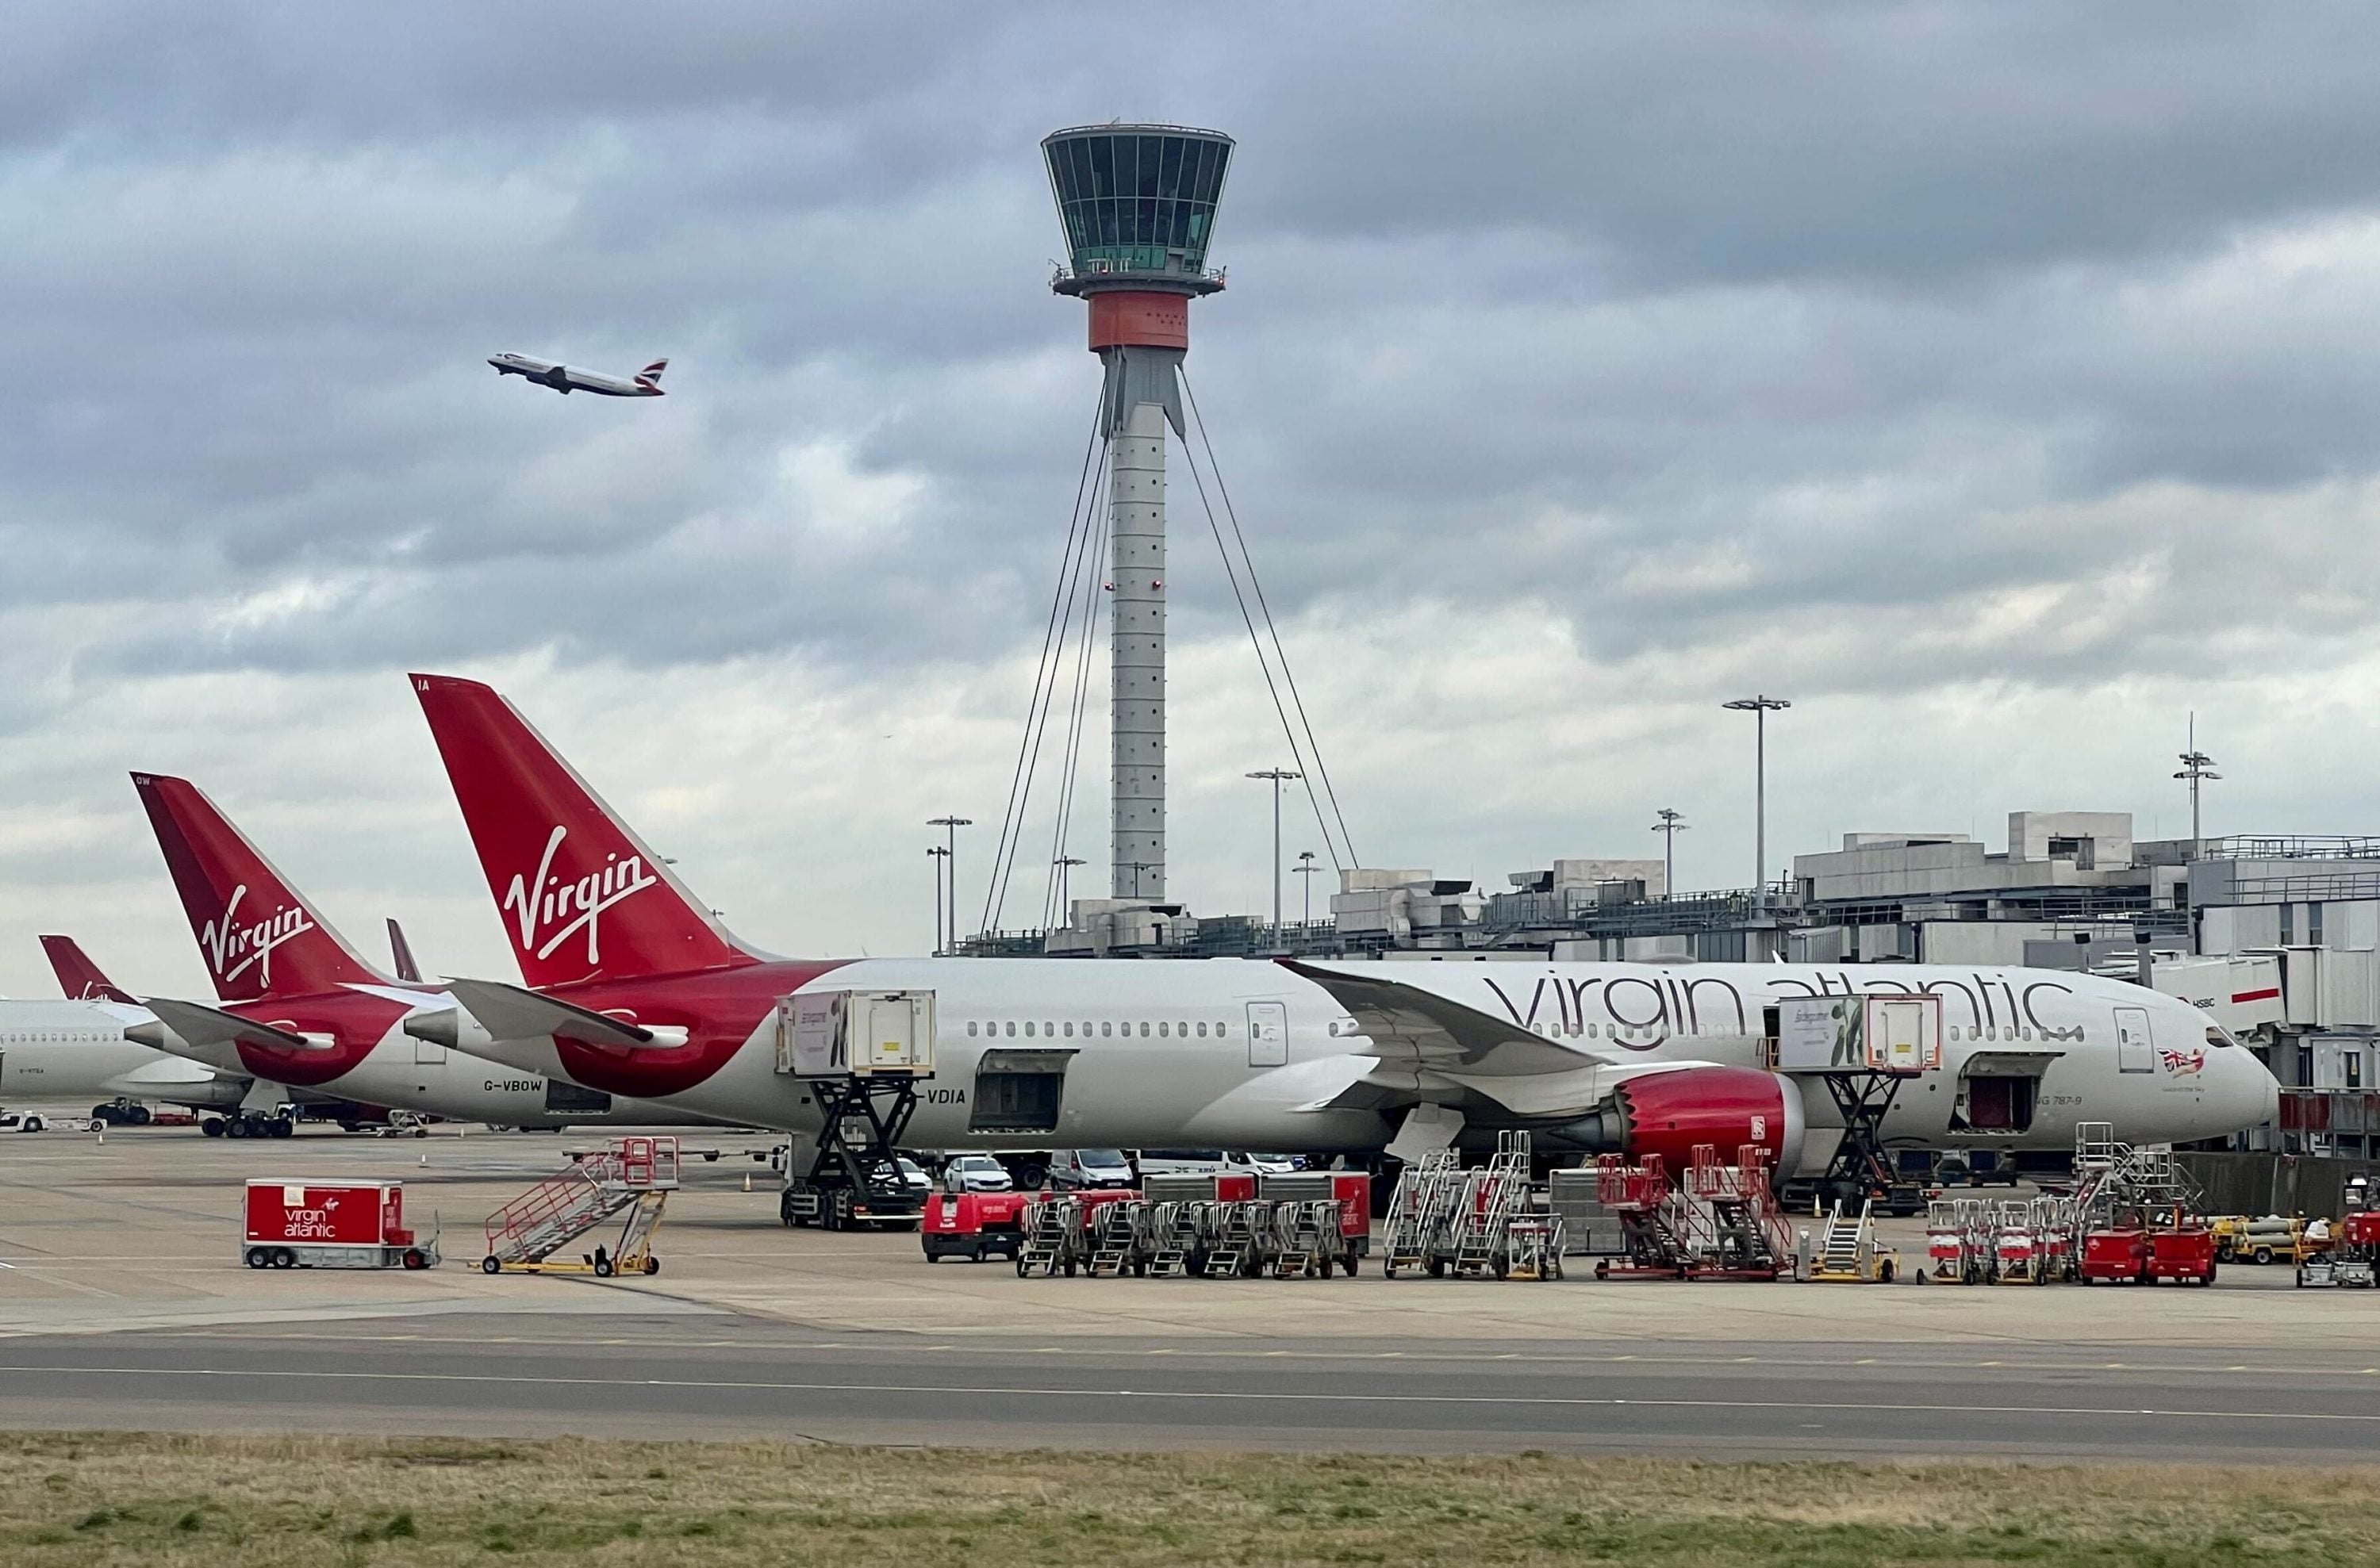 Virgin Atlantic aircraft at Heathrow